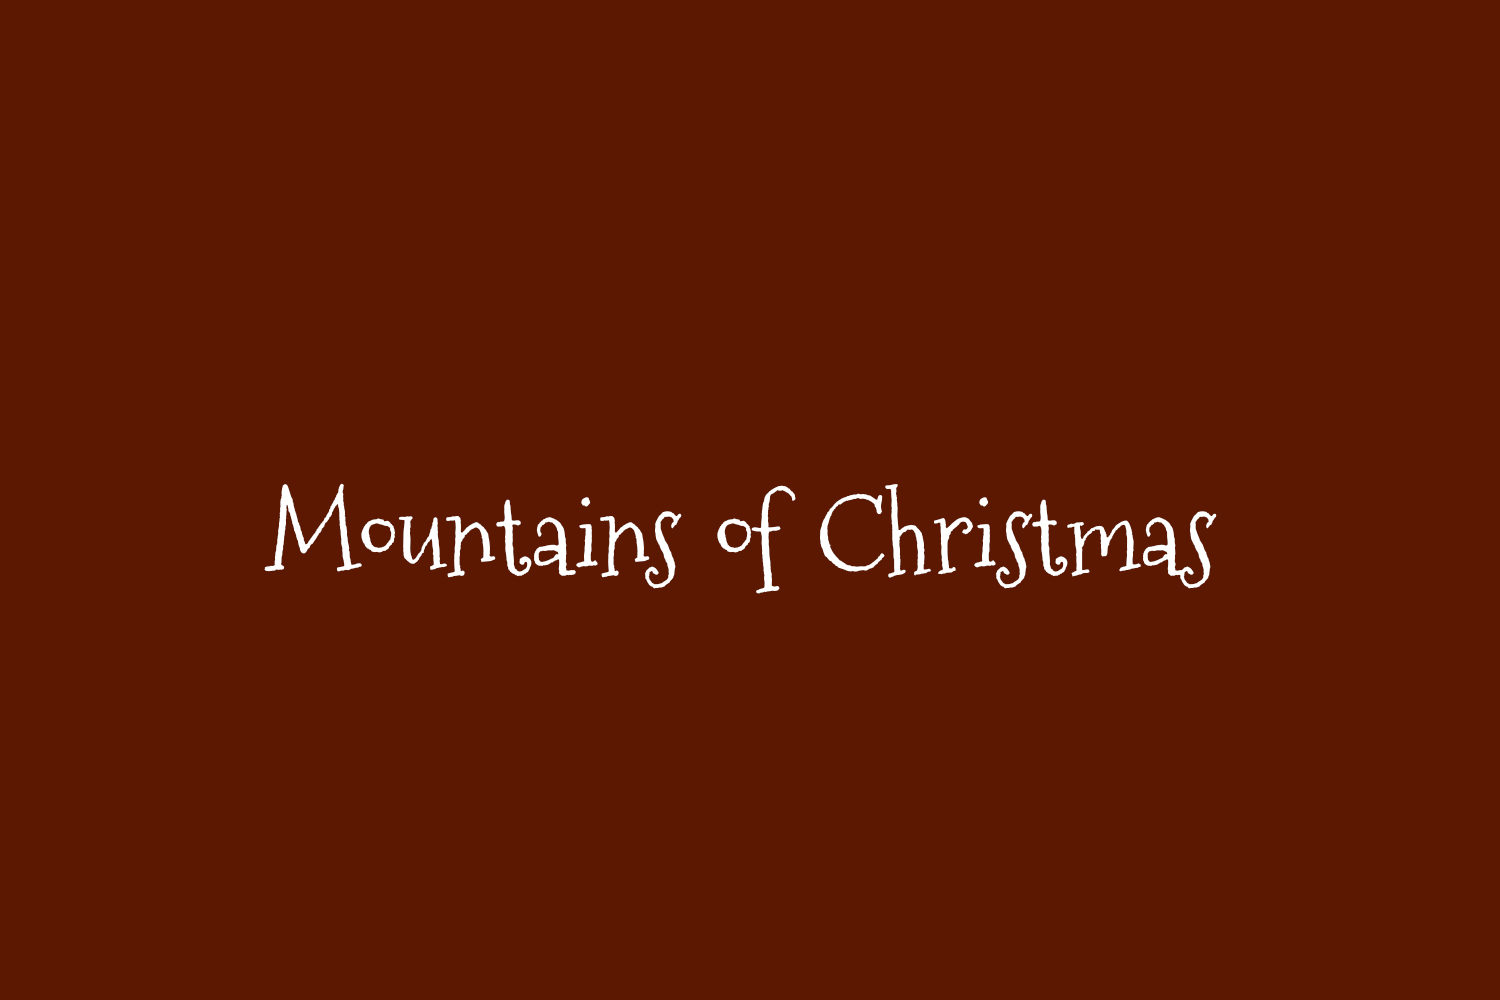 Mountains of Christmas